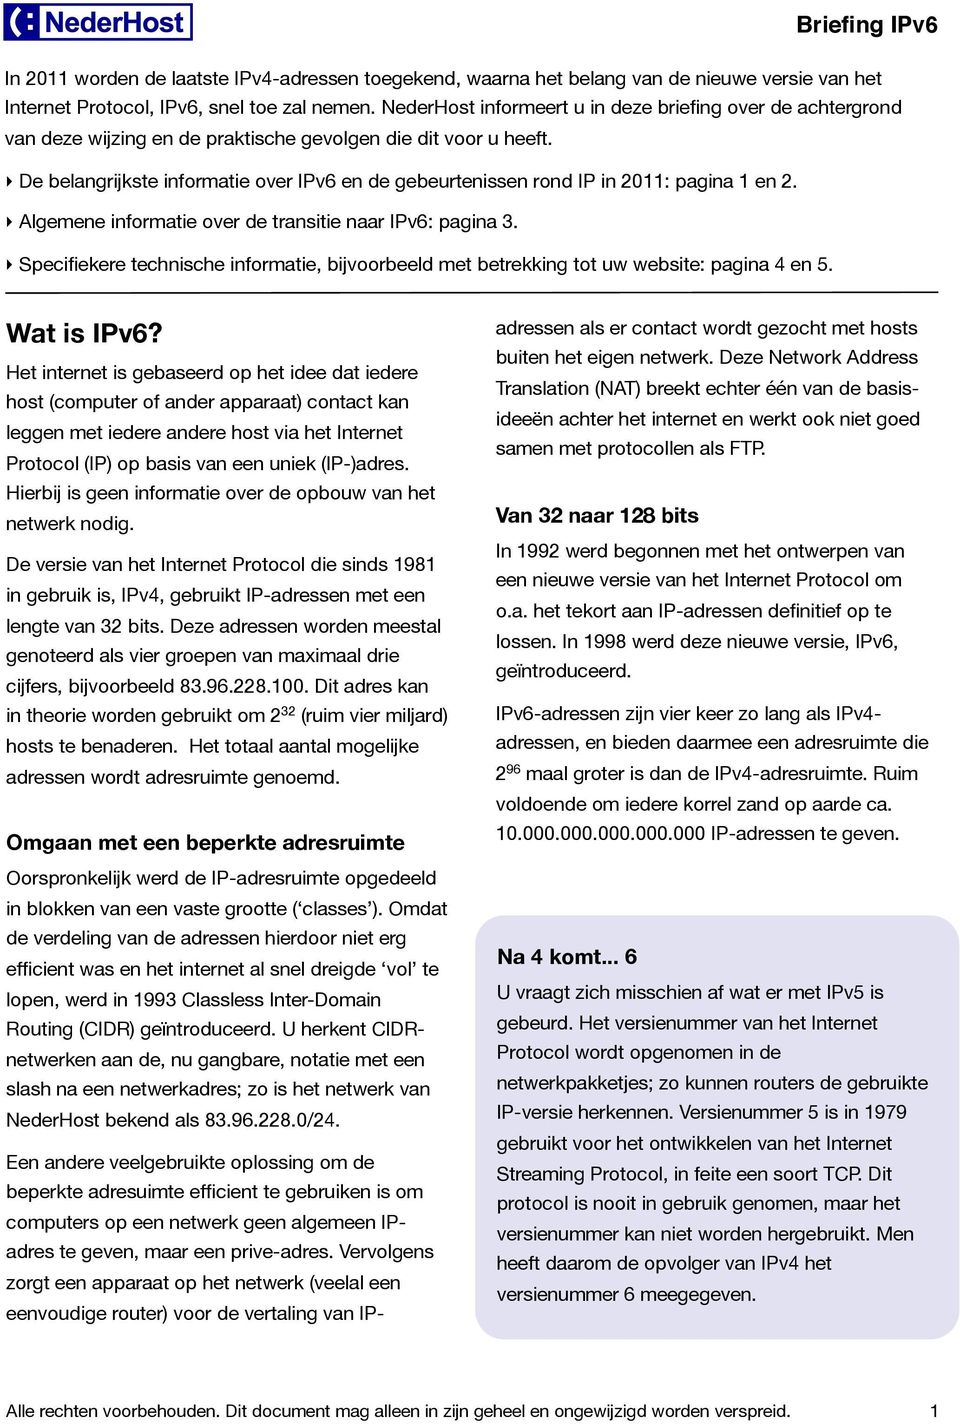 De belangrijkste informatie over IPv6 en de gebeurtenissen rond IP in 2011: pagina 1 en 2. Algemene informatie over de transitie naar IPv6: pagina 3.